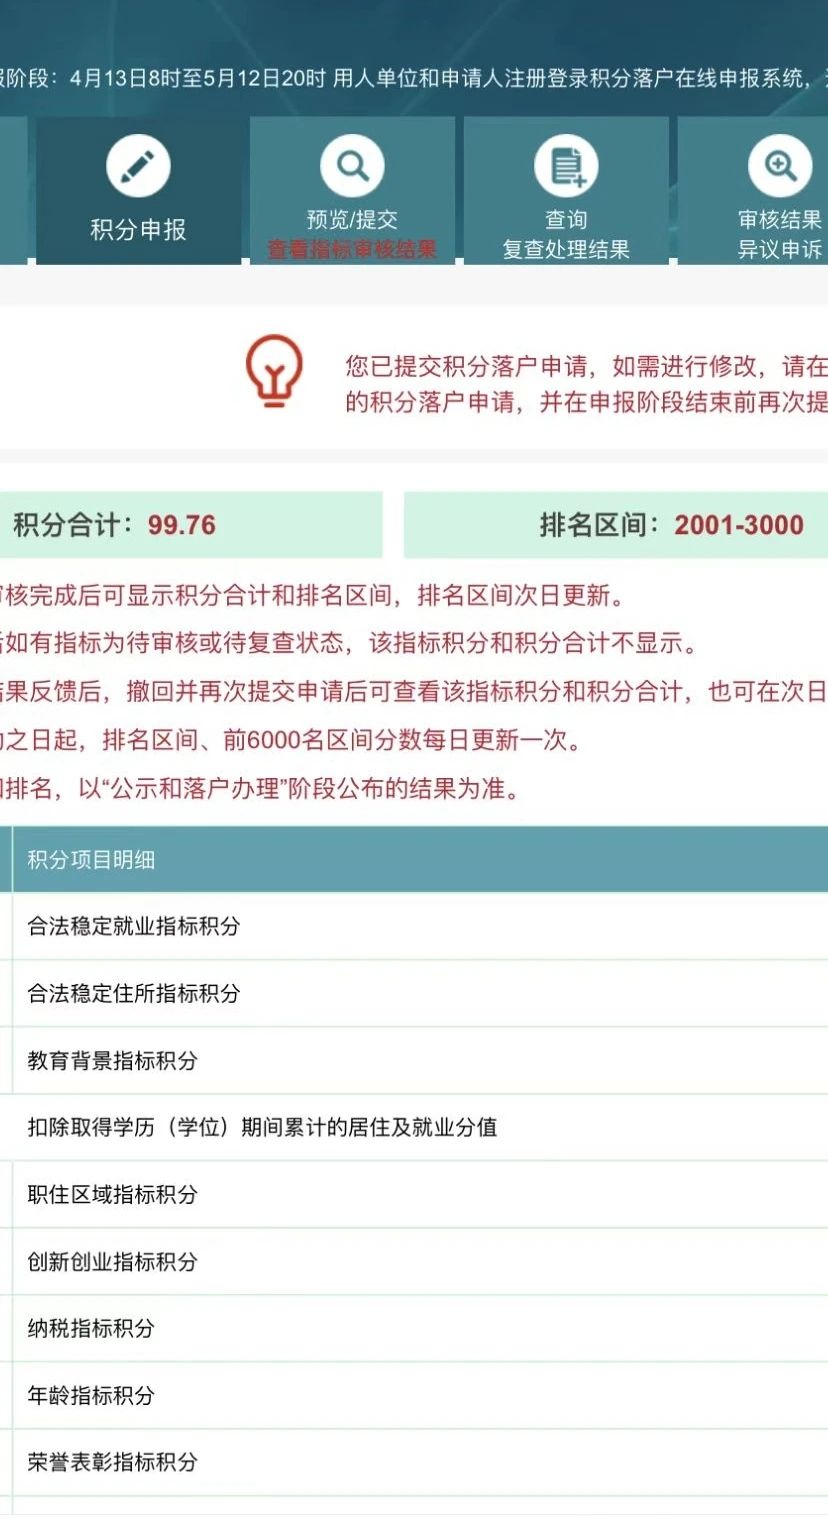 2023年北京积分落户前6000名区间排名与最低分数（4月14日）